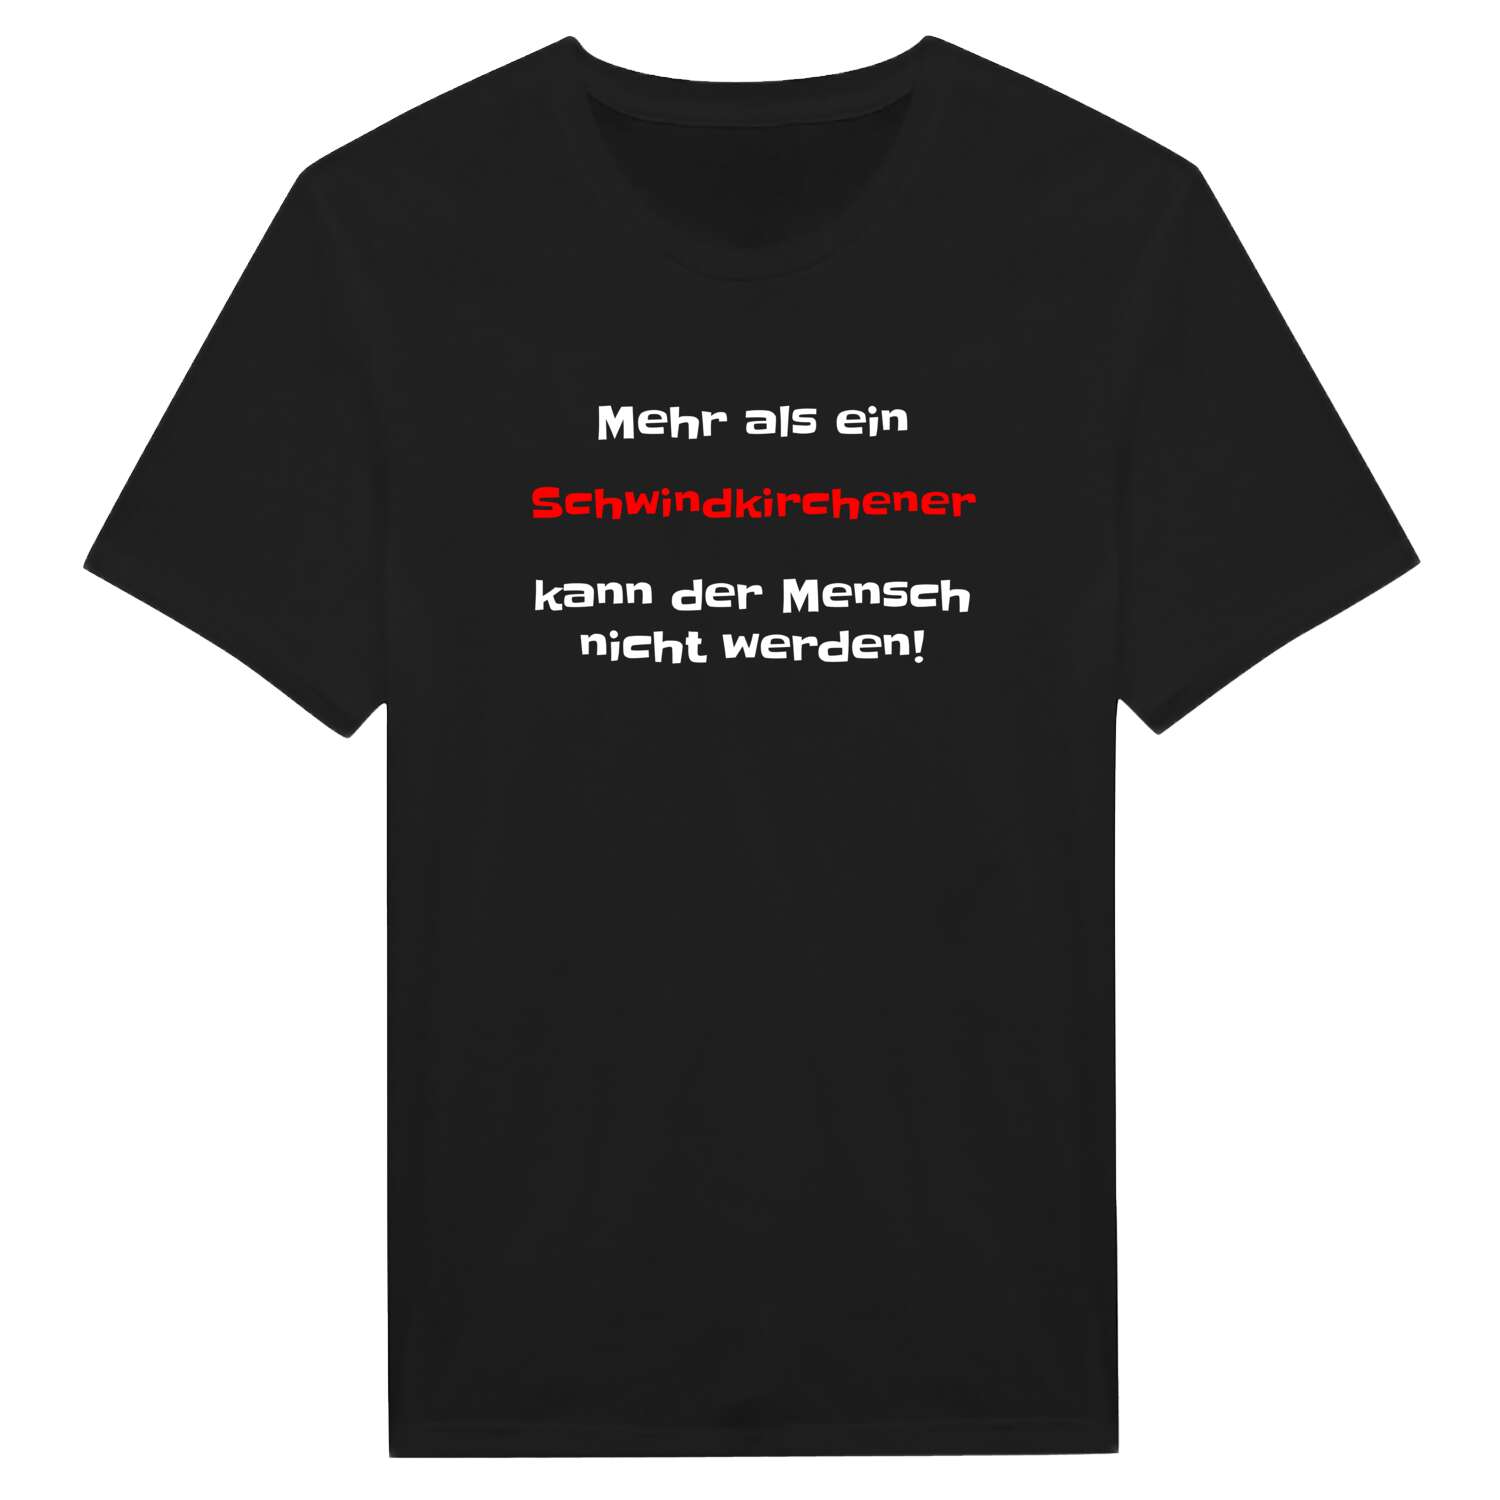 Schwindkirchen T-Shirt »Mehr als ein«